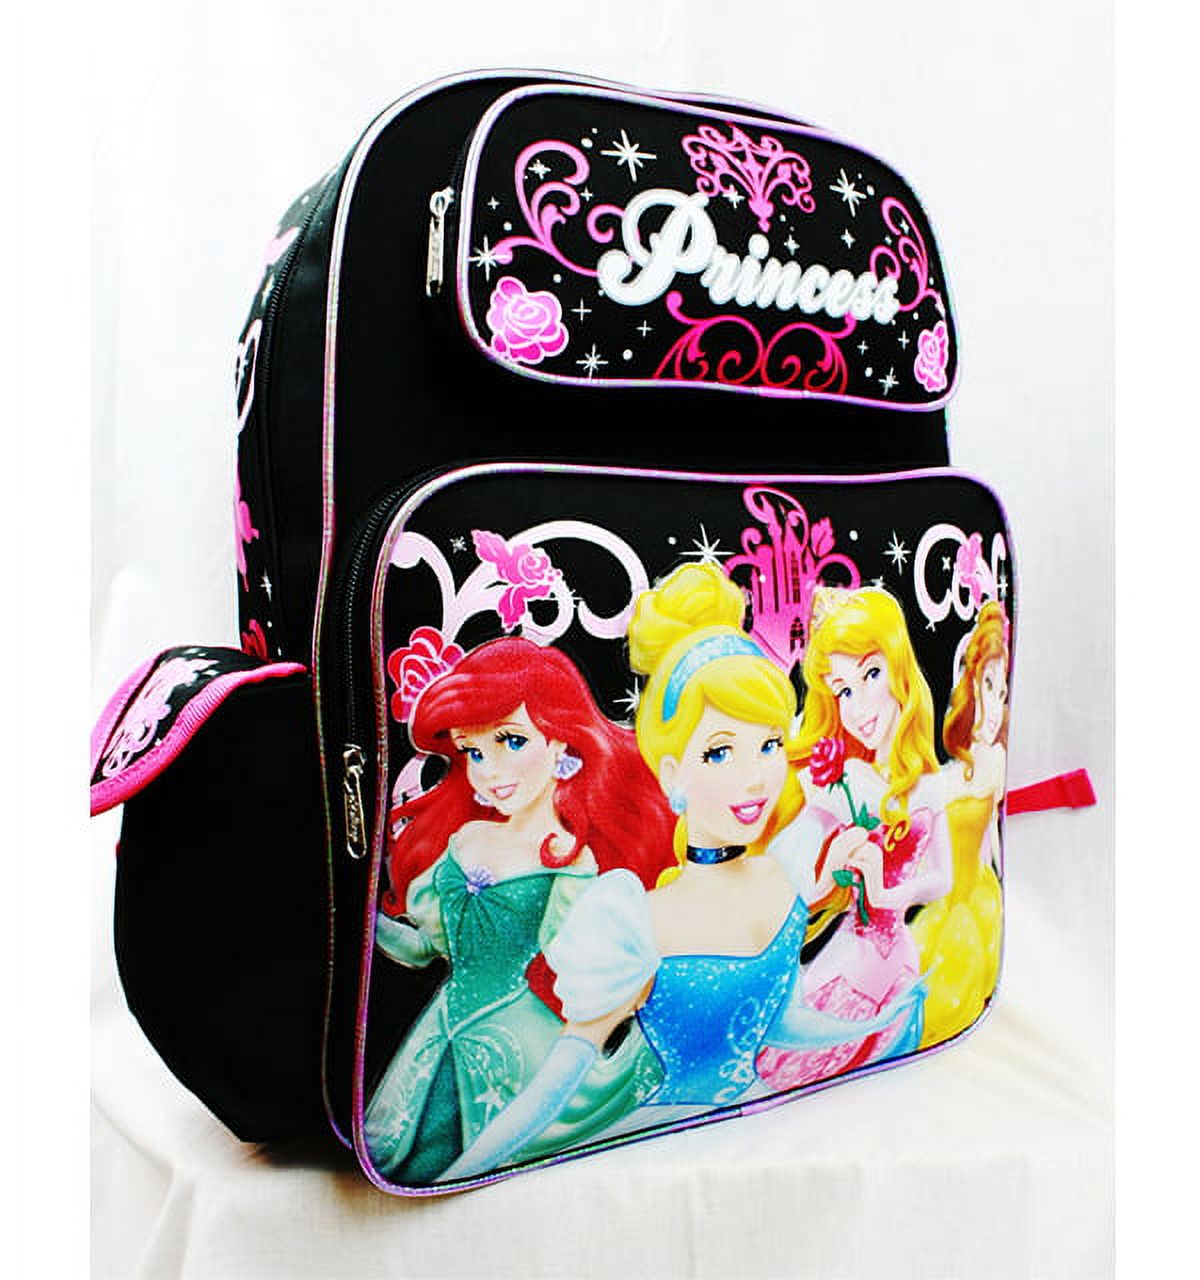 Backpack - - 4 Princess Rose Bag Black School Bag New A05932 - image 2 of 3